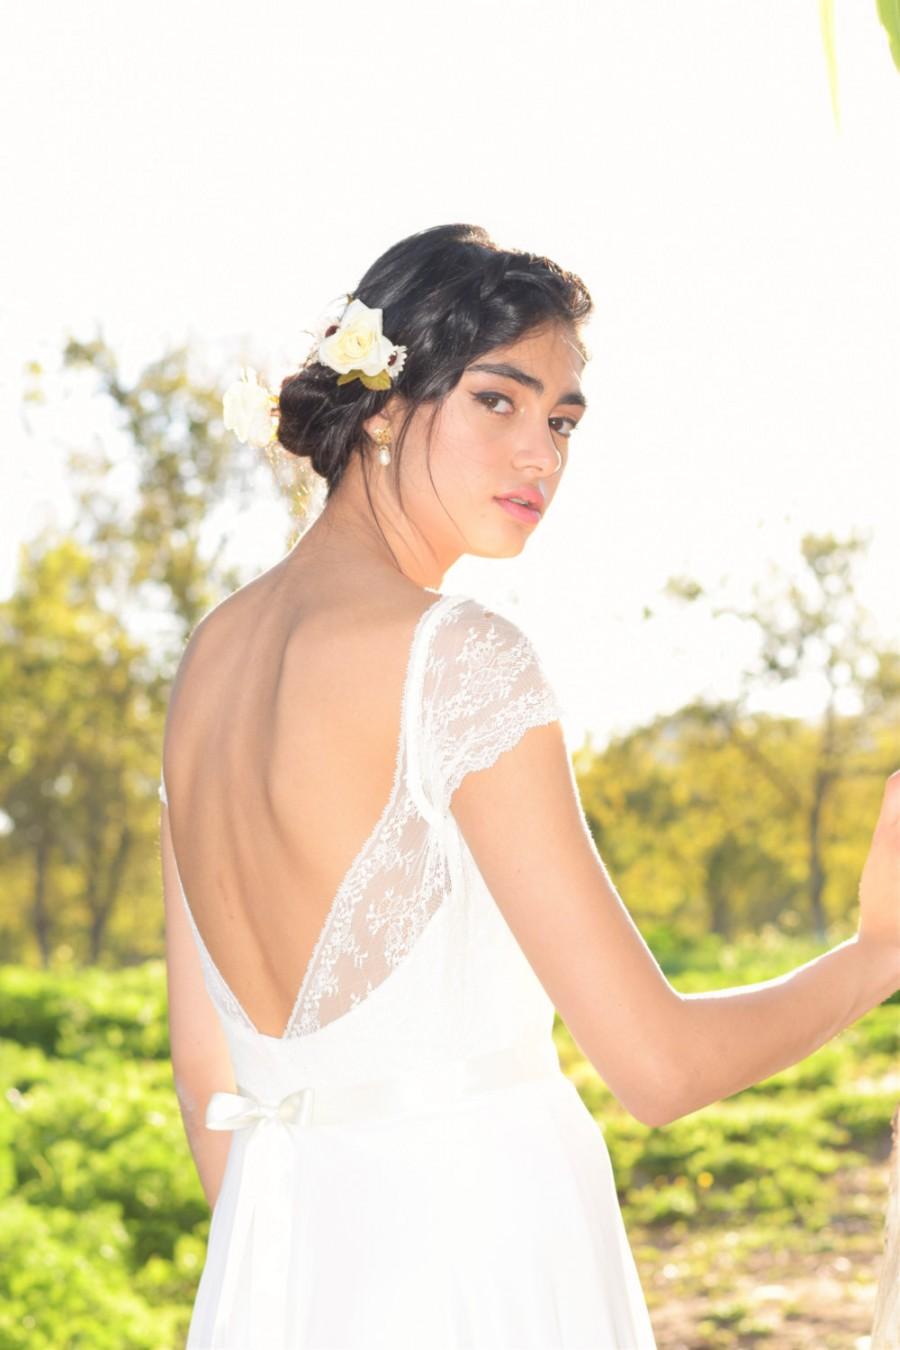 Wedding - Jenny- Boho wedding dress, lace wedding dress, beach wedding dress, wedding dress with sleeves